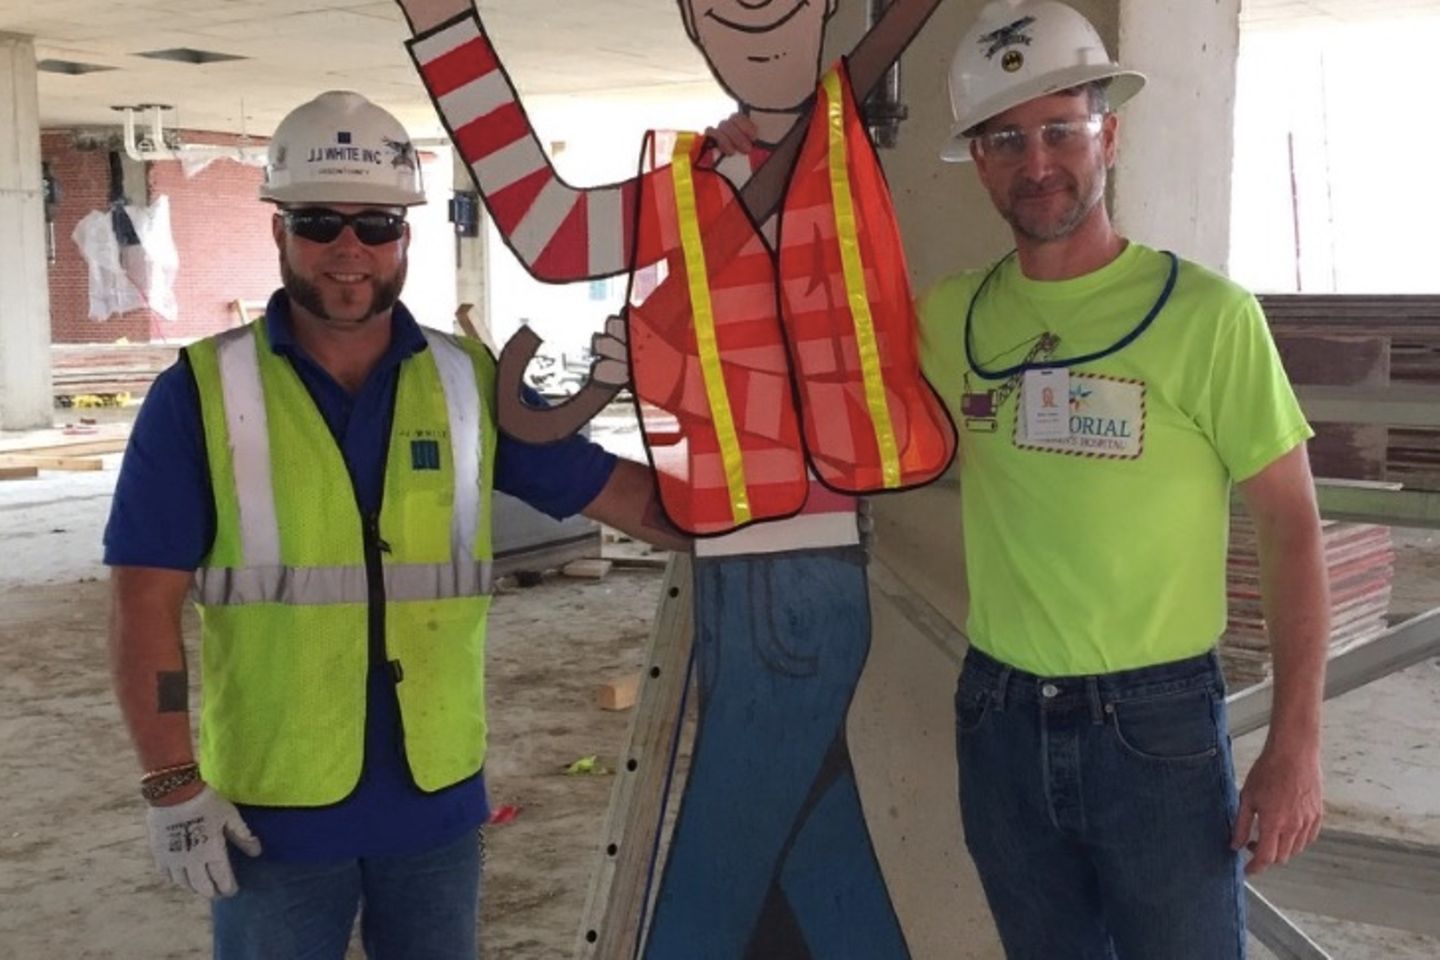 Waldo ist übrigens der Lieblingskollege aller Bauarbeiter - steht nie im Weg, verhält sich ruhig und bringt (nicht nur) Kinder zum Lachen.   So einen wünschen wir uns doch alle, oder?